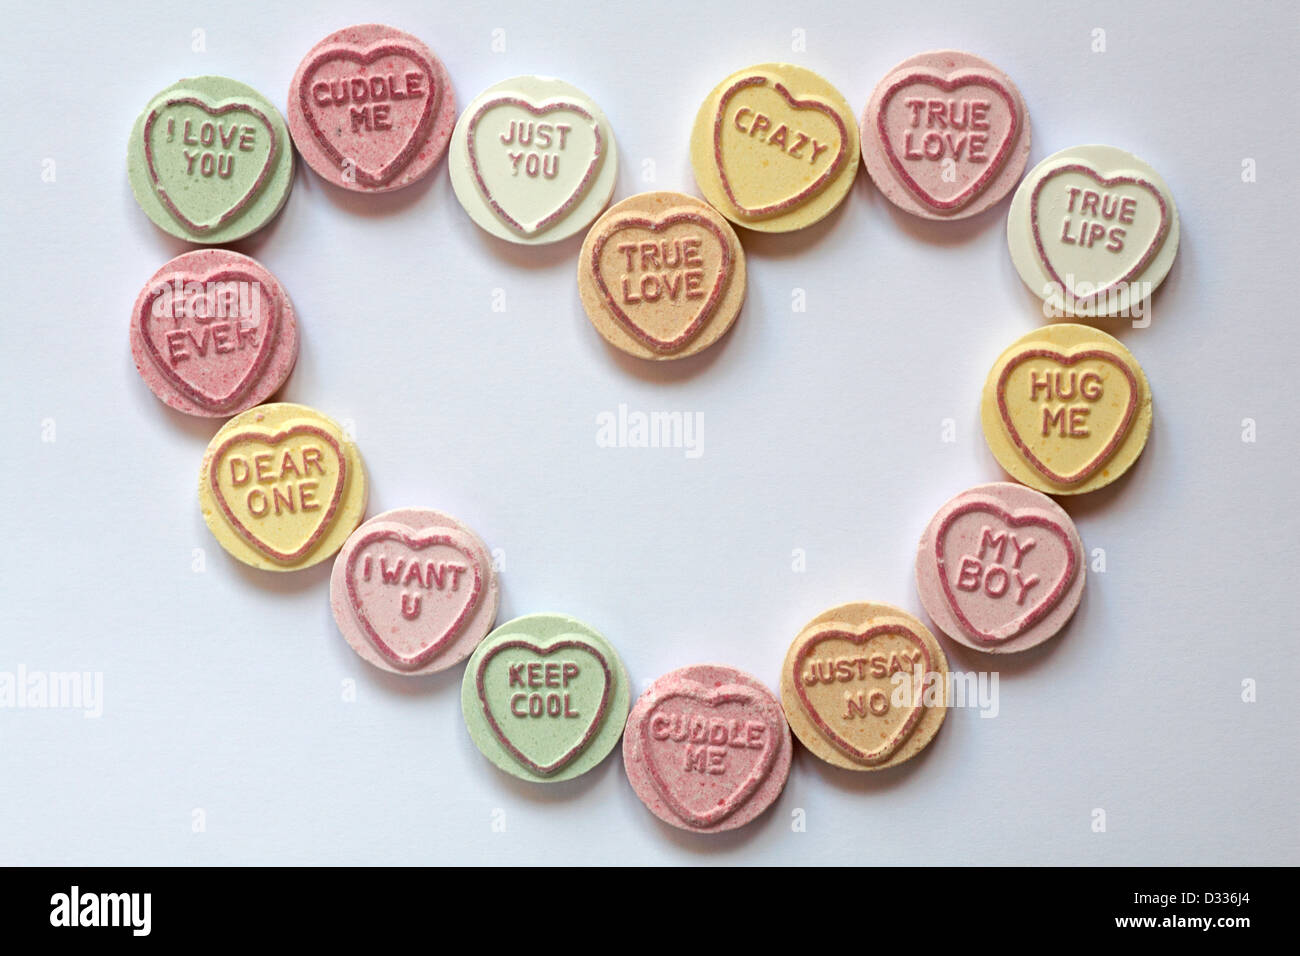 Coeur doux de chérie - bonbons coeur d'amour avec des messages, disposés en forme de coeur pour la Saint Valentin, la Saint-Valentin - bonbons coeur de coeur d'amour d'en haut Banque D'Images